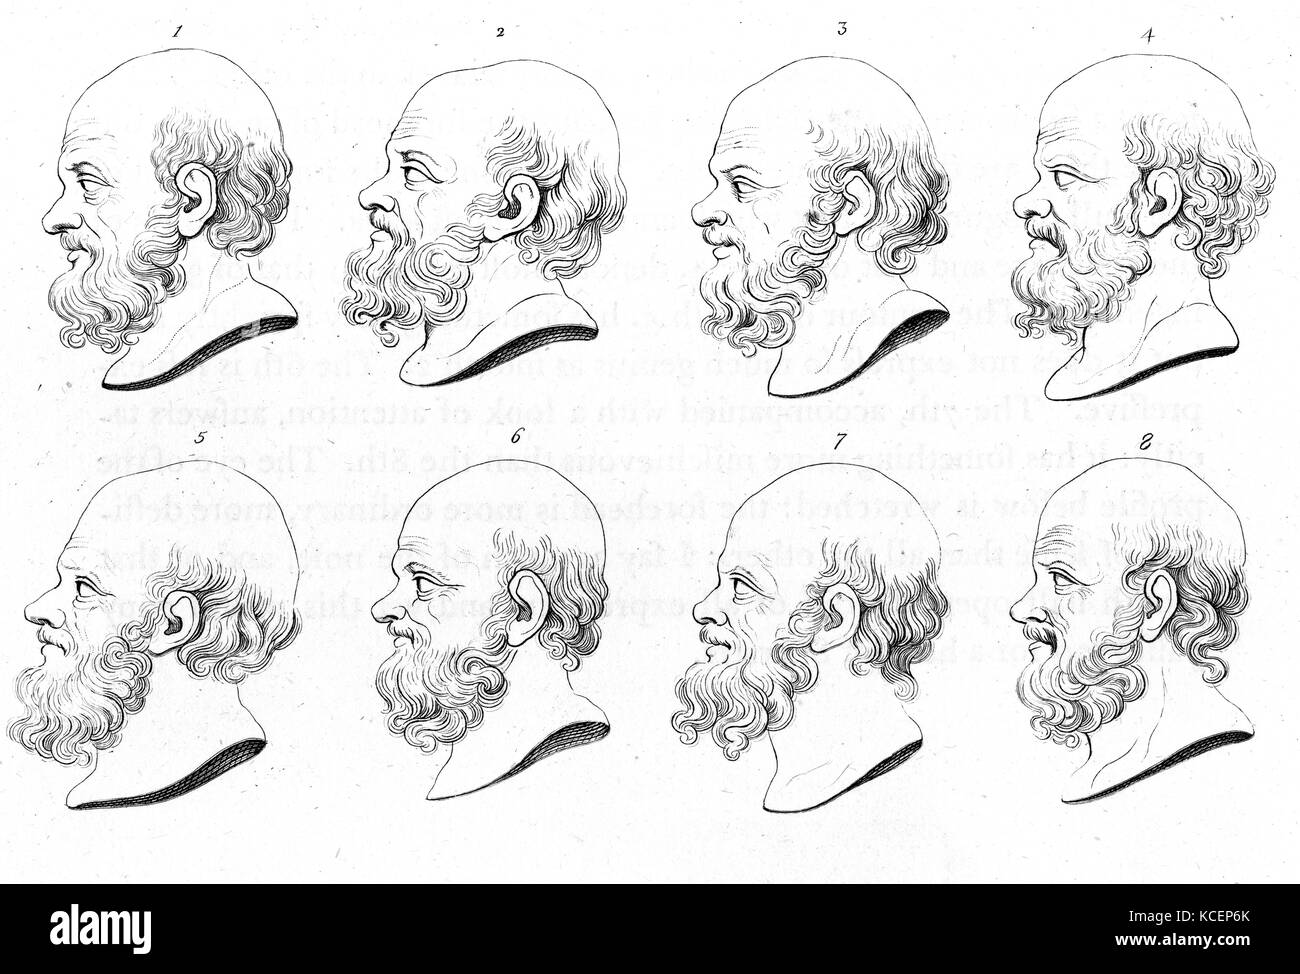 Abbildung: Darstellung einer Profil von Sokrates. Sokrates war ein klassischer griechischer Philosoph und Pädagoge. Vom 18. Jahrhundert Stockfoto